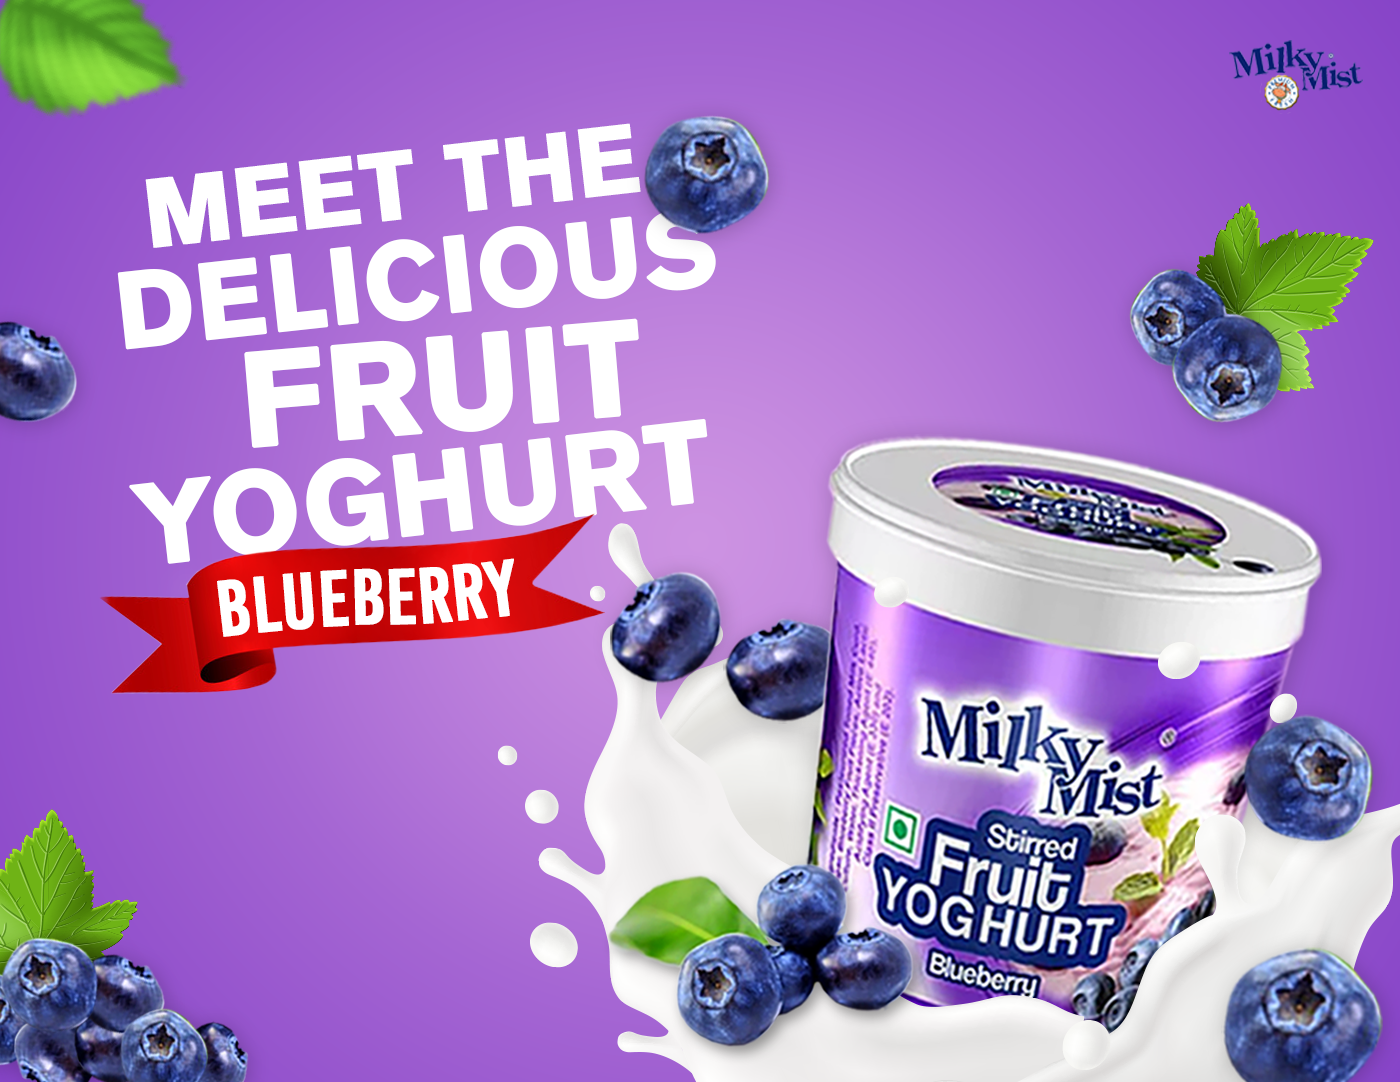 blueberry blueberrydesign DIGITALMEDIA digitalmediadesign fruityoghurt graphics leaves milkymist Socialmedia SOCIALMEDIADESIGN